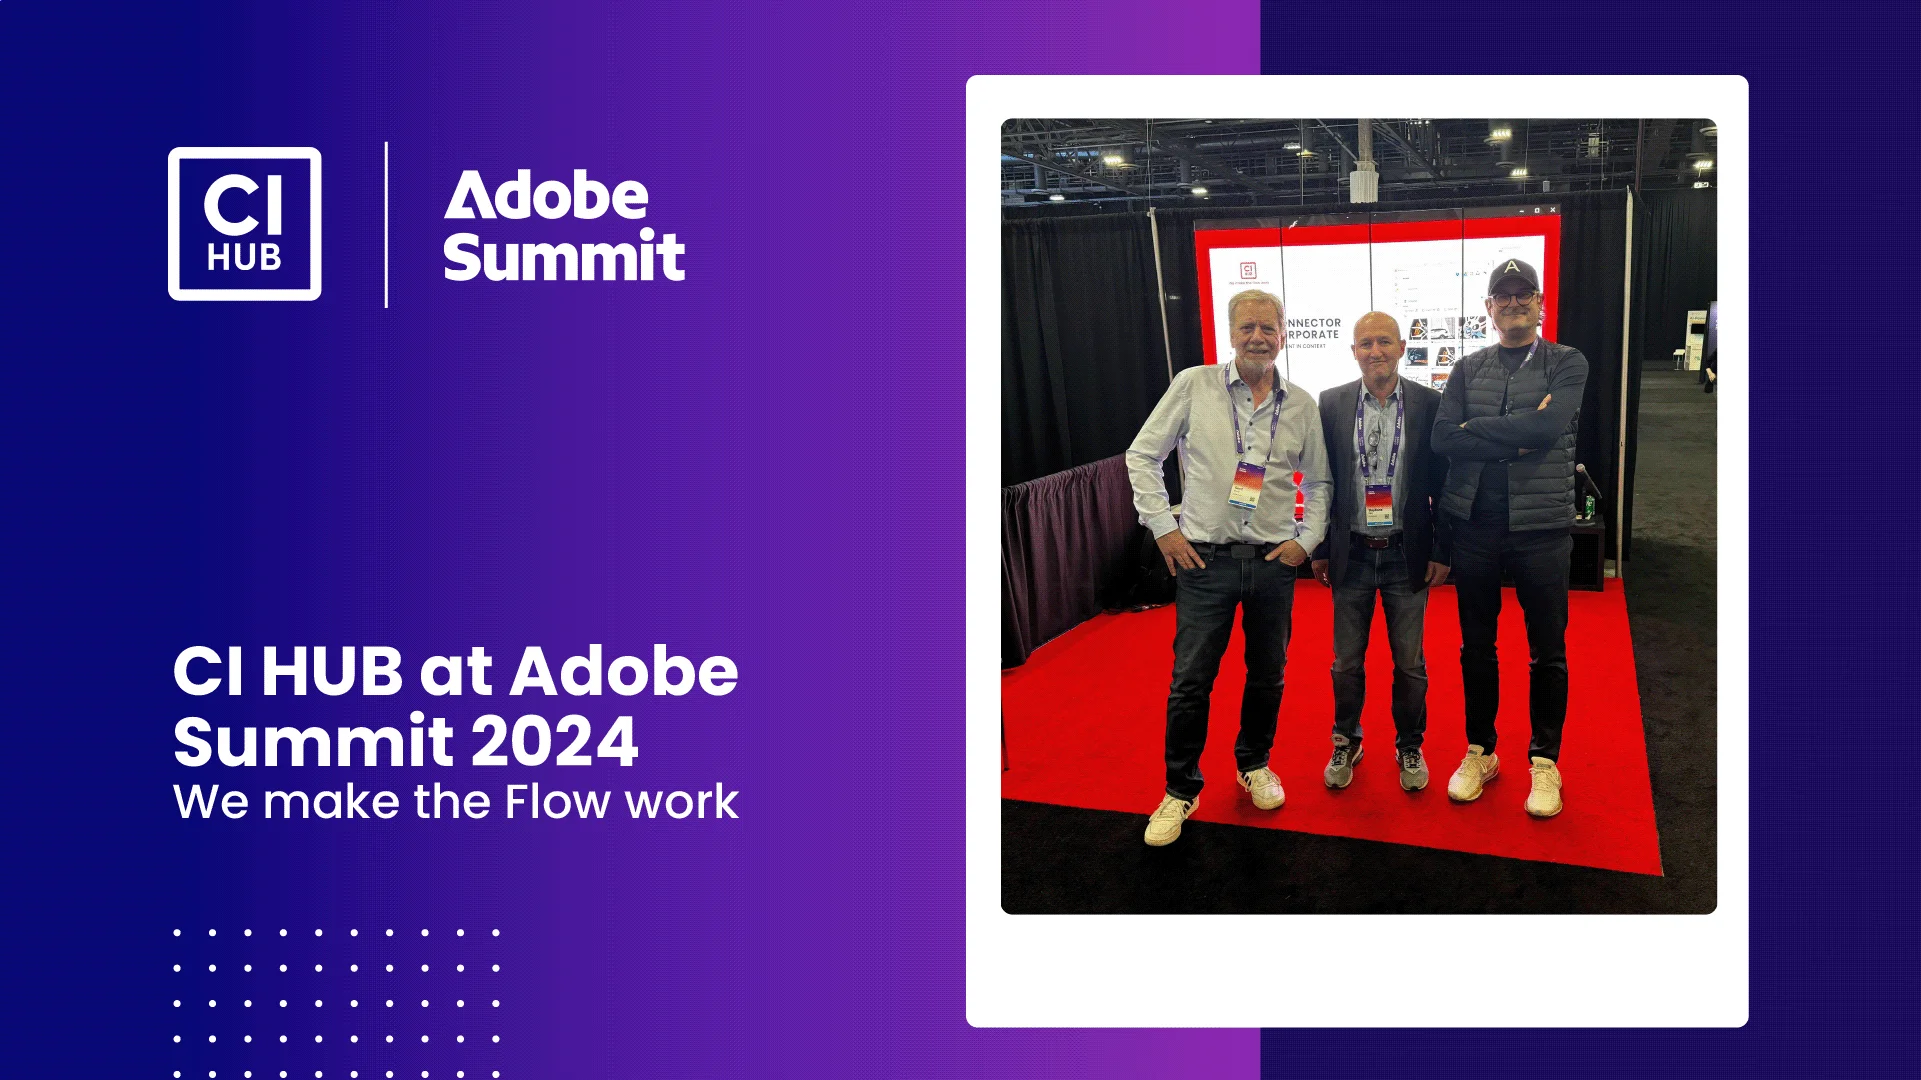 Adobe Summit 2024 - We make the Flow work